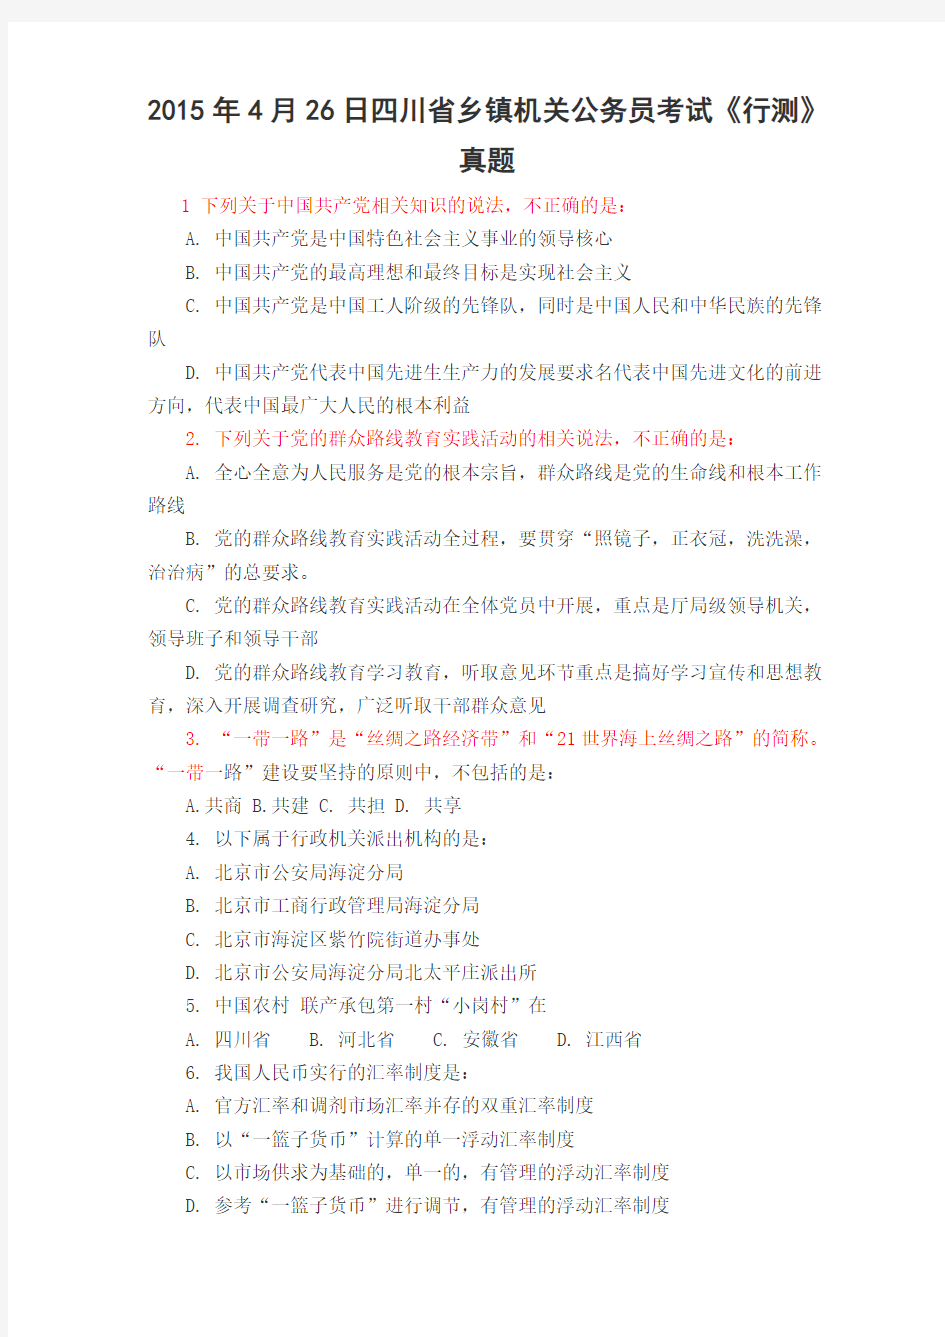 2015年4月26日四川省乡镇机关公务员考试《行测》真题及答案解析